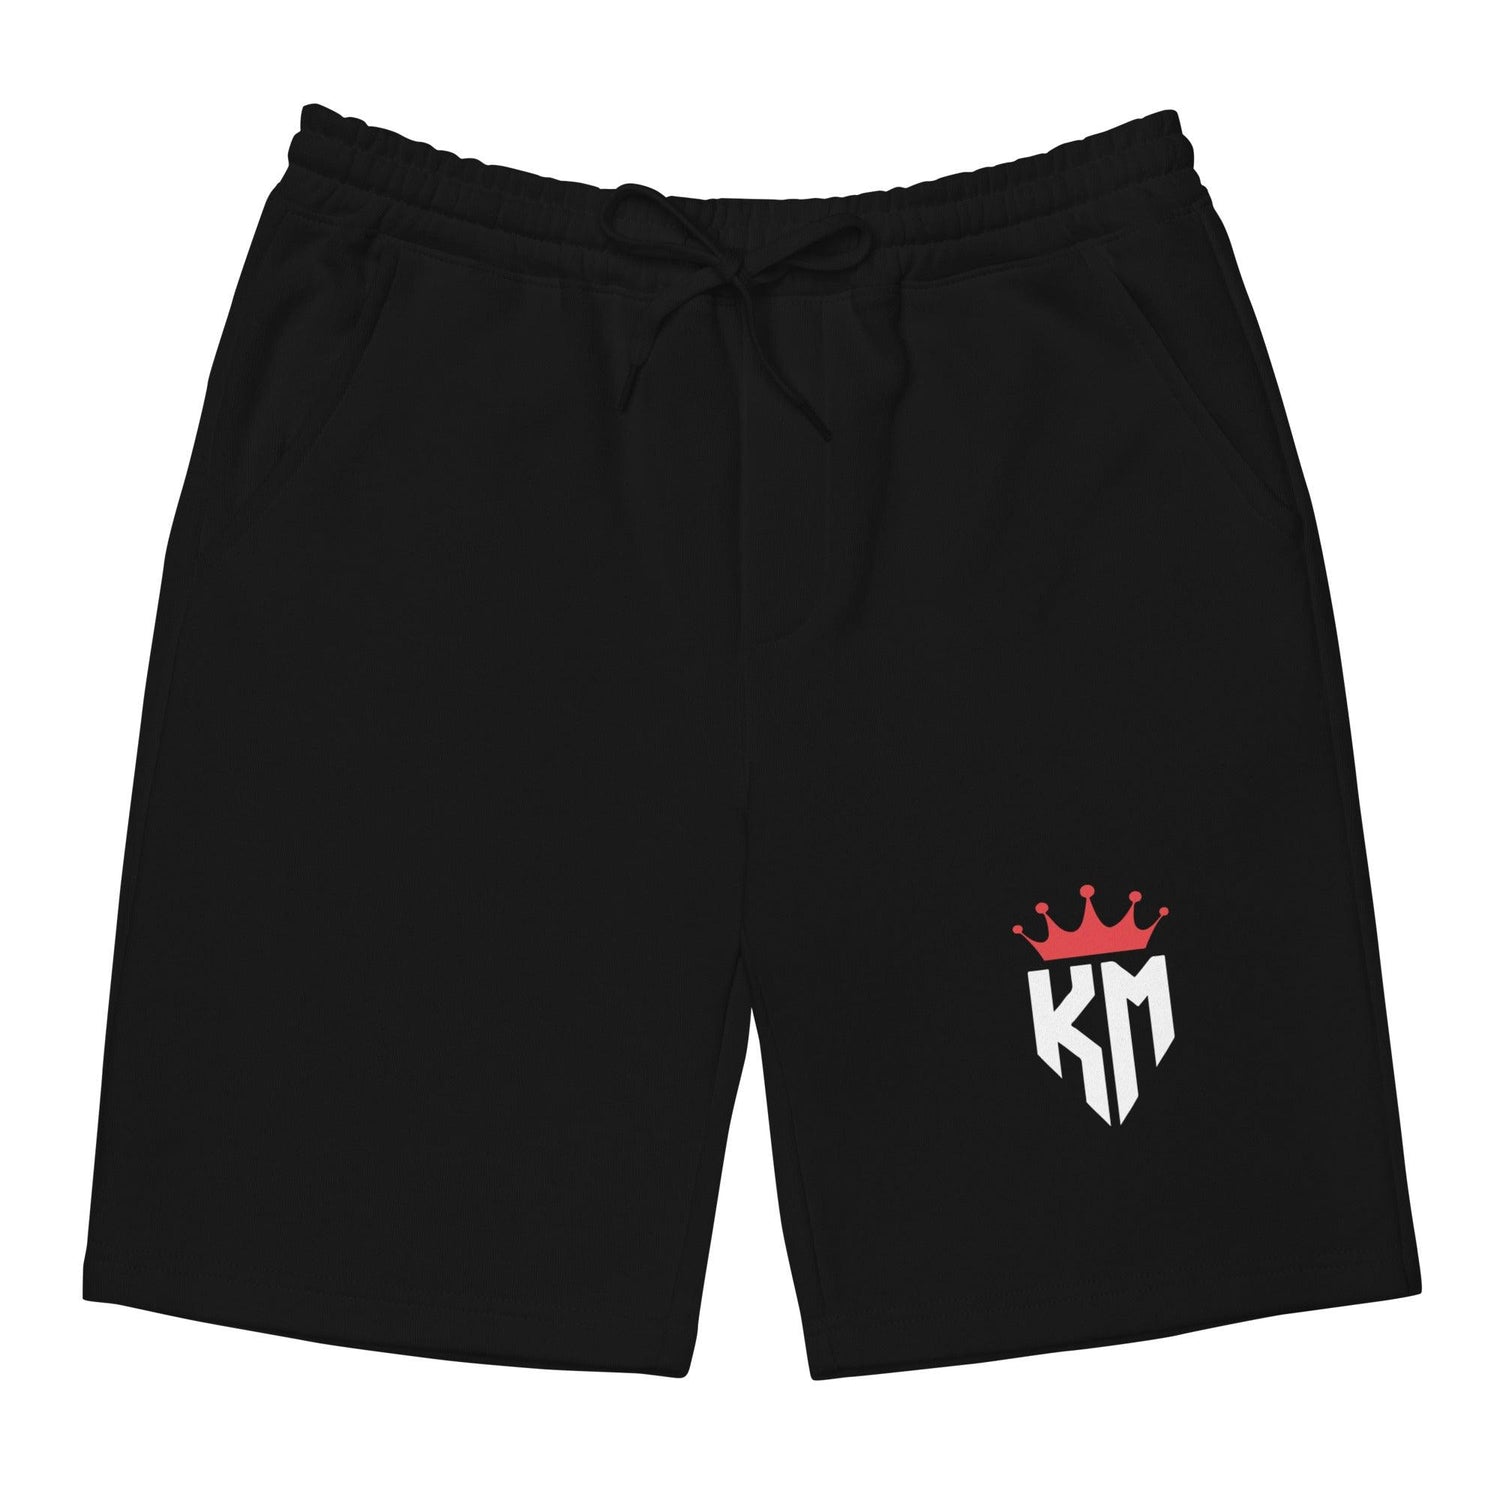 Kennady McQueen "KM" shorts - Fan Arch